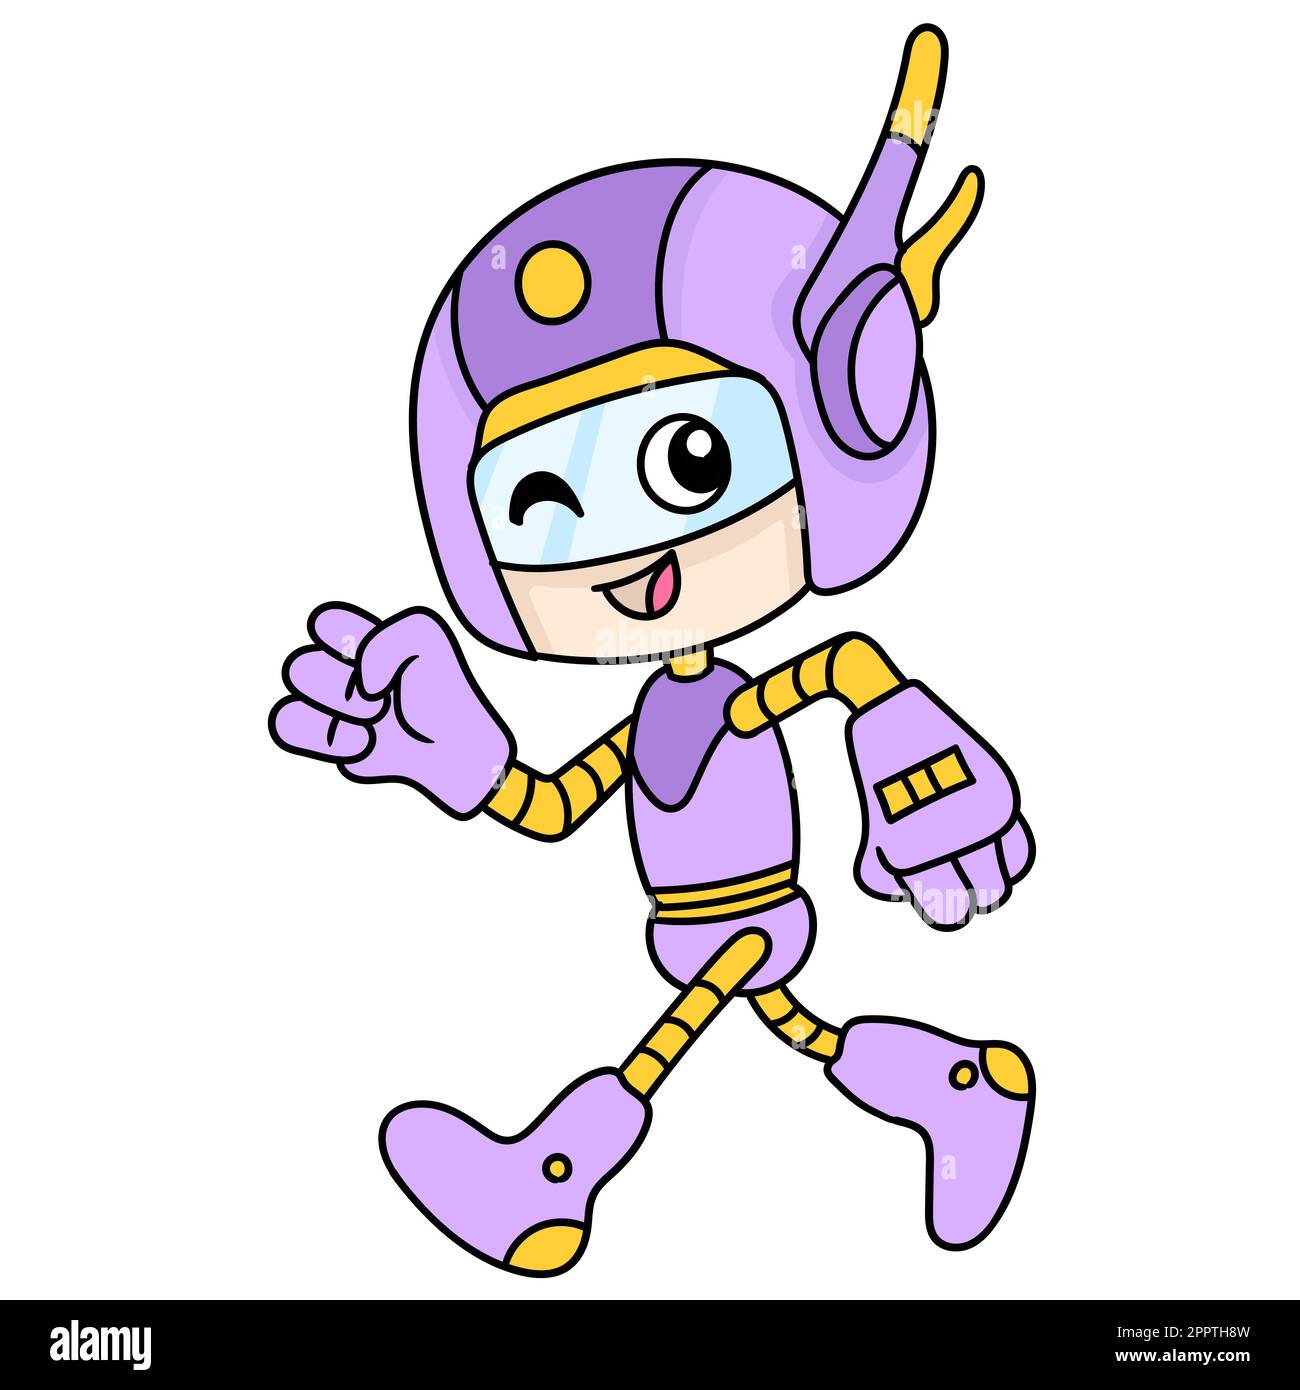 Roboter-Superheld in High-Tech-Outfit, der mit einem fröhlichen Lächeln und einem koodle-Ikone-Bild Kawaii läuft Stock Vektor